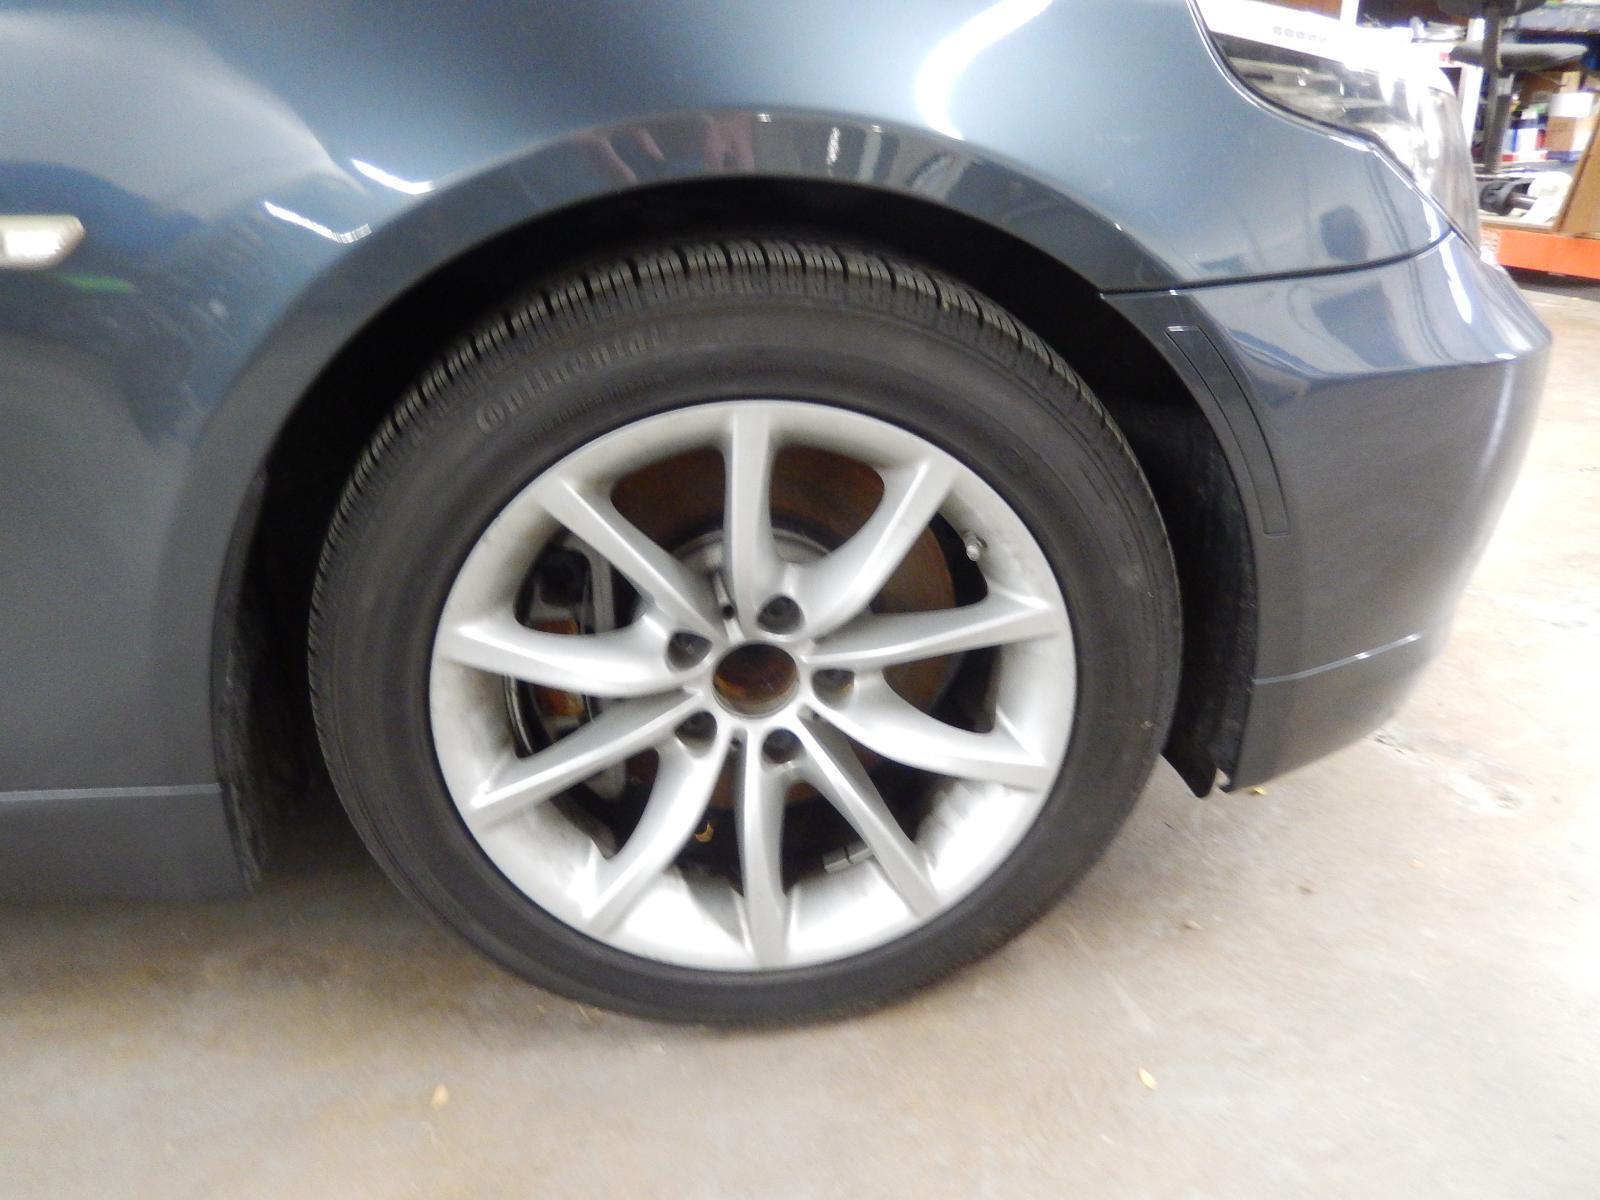 08 09 10 BMW 550i: OEM Wheel 17x8 (alloy), 10 spoke, V spoke